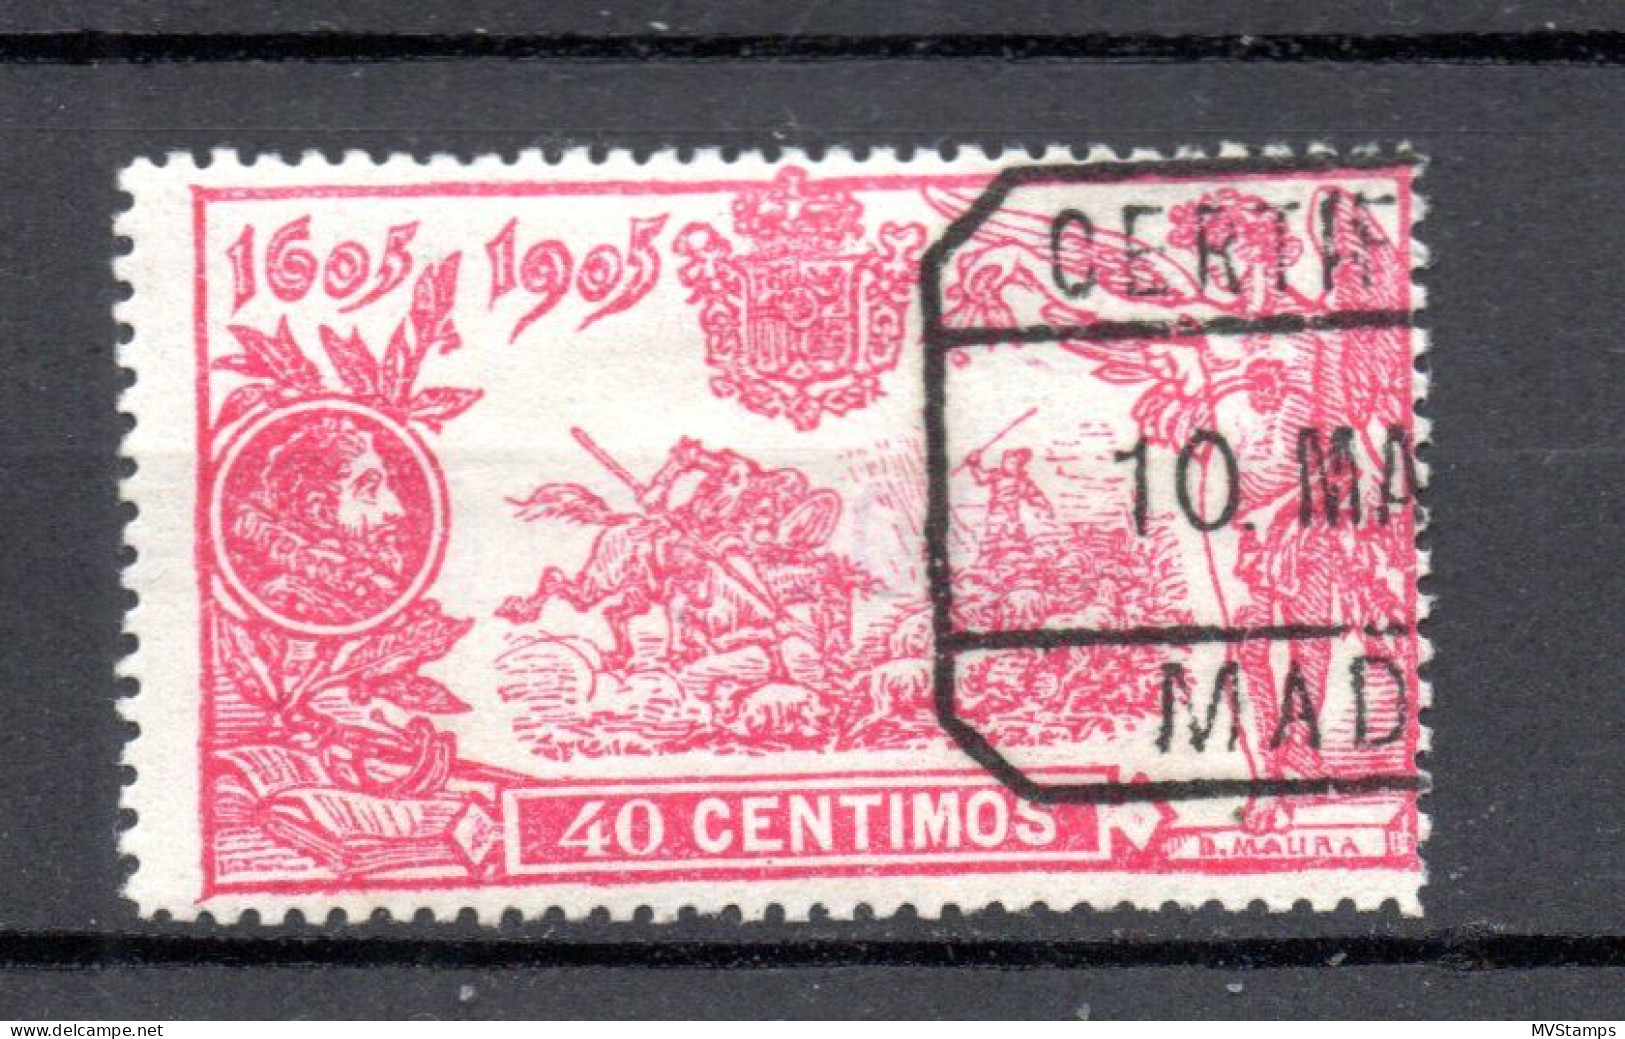 Spanien 1905 Freimarke 225 Don Quijote 40 Centimos Gebraucht - Usati